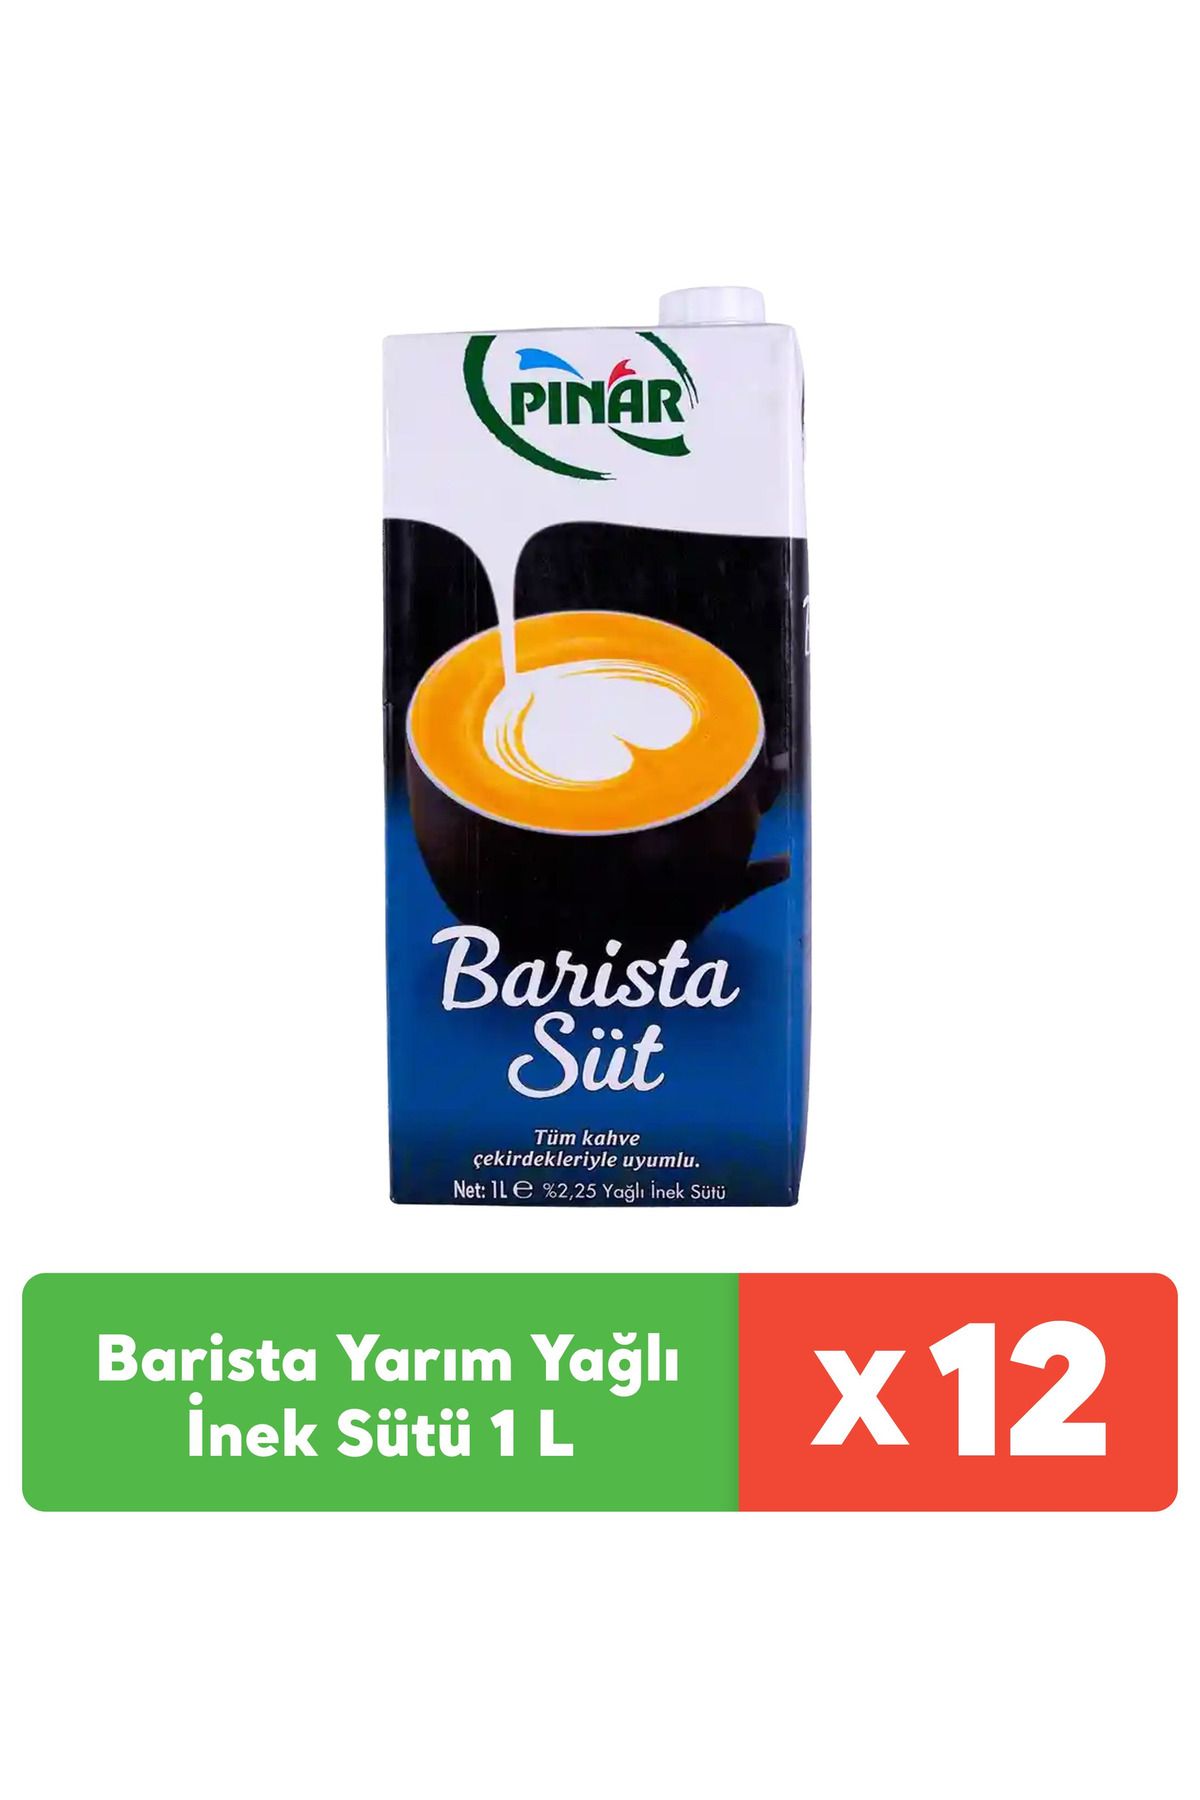 Pınar Barista Yarım Yağlı İnek Sütü 1 L x 12 adet